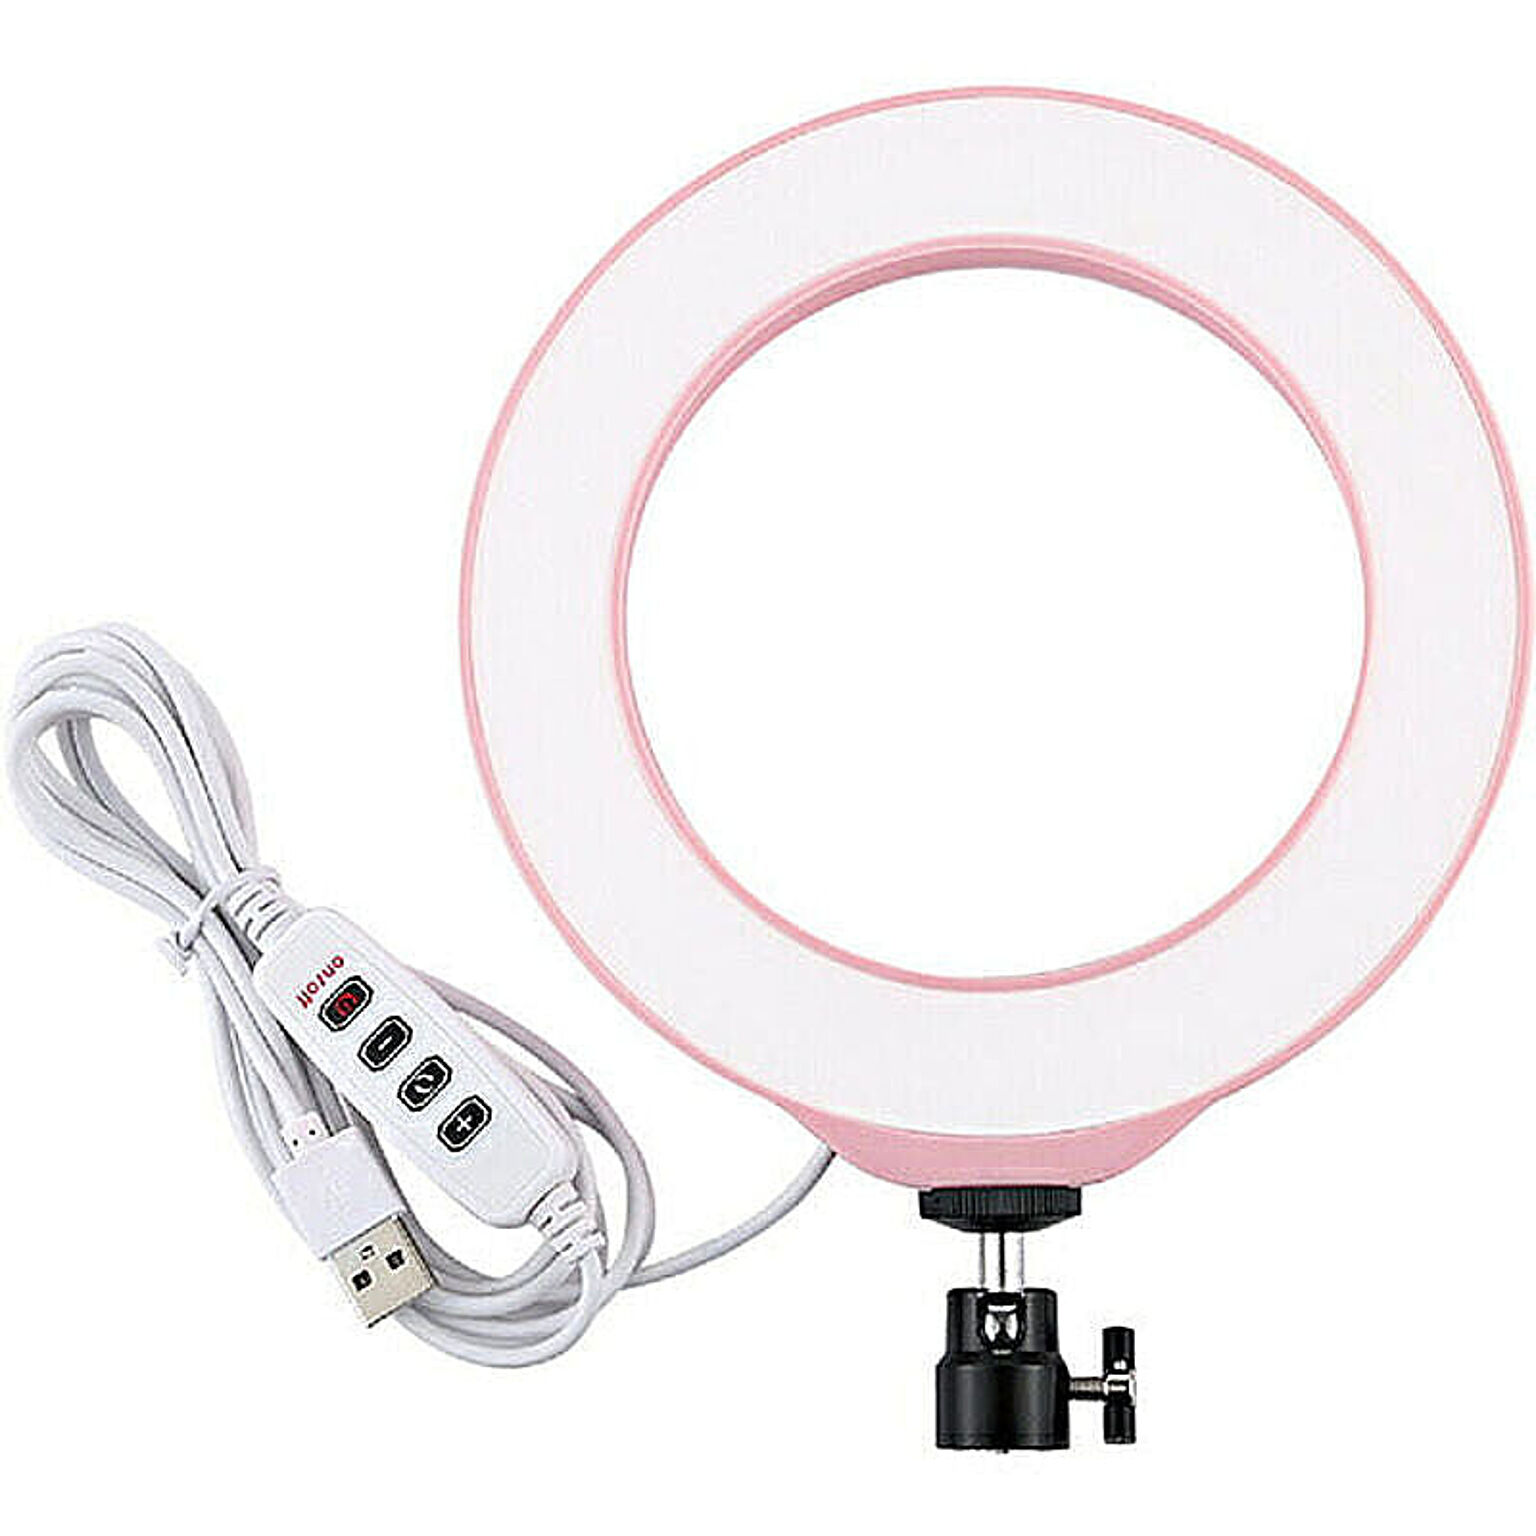 撮影用リングLED照明 160mm ピンク フリーダム FPUL378PK LEDリングライト自撮り USBライト led リングライト 撮影 卓上 三脚 卓上ライト 自撮りライト 自撮り